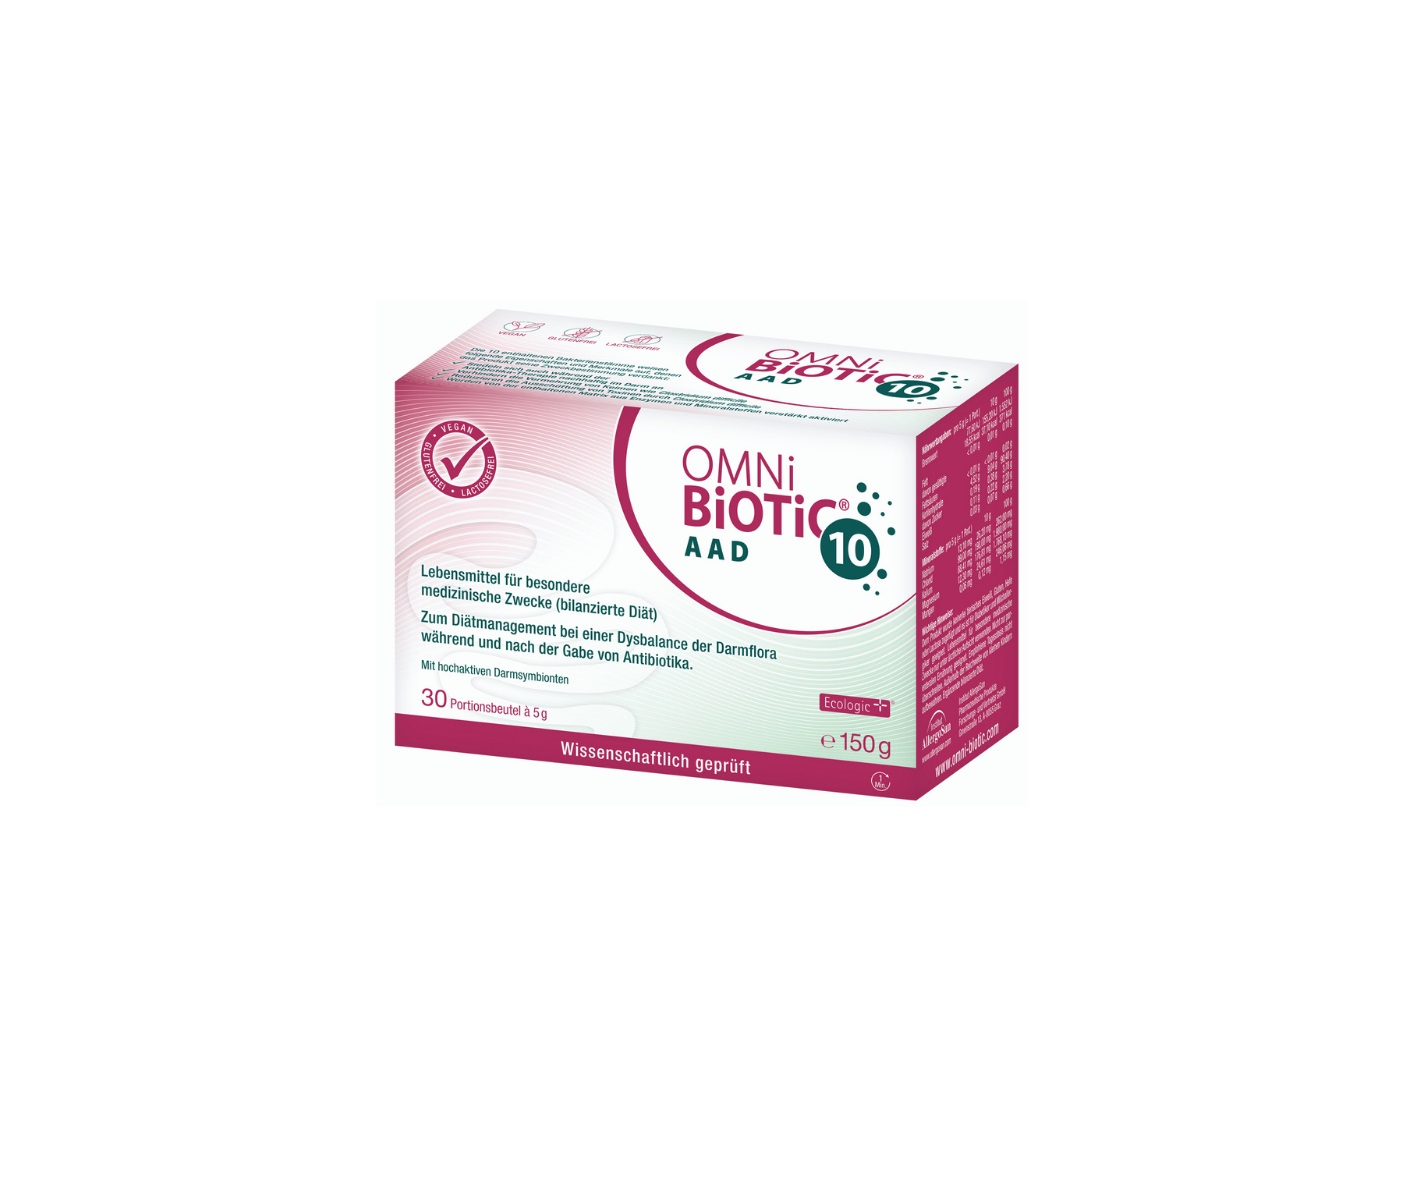 Omni-Biotic, 10 AAD probiotyk, suplement diety w saszetkach